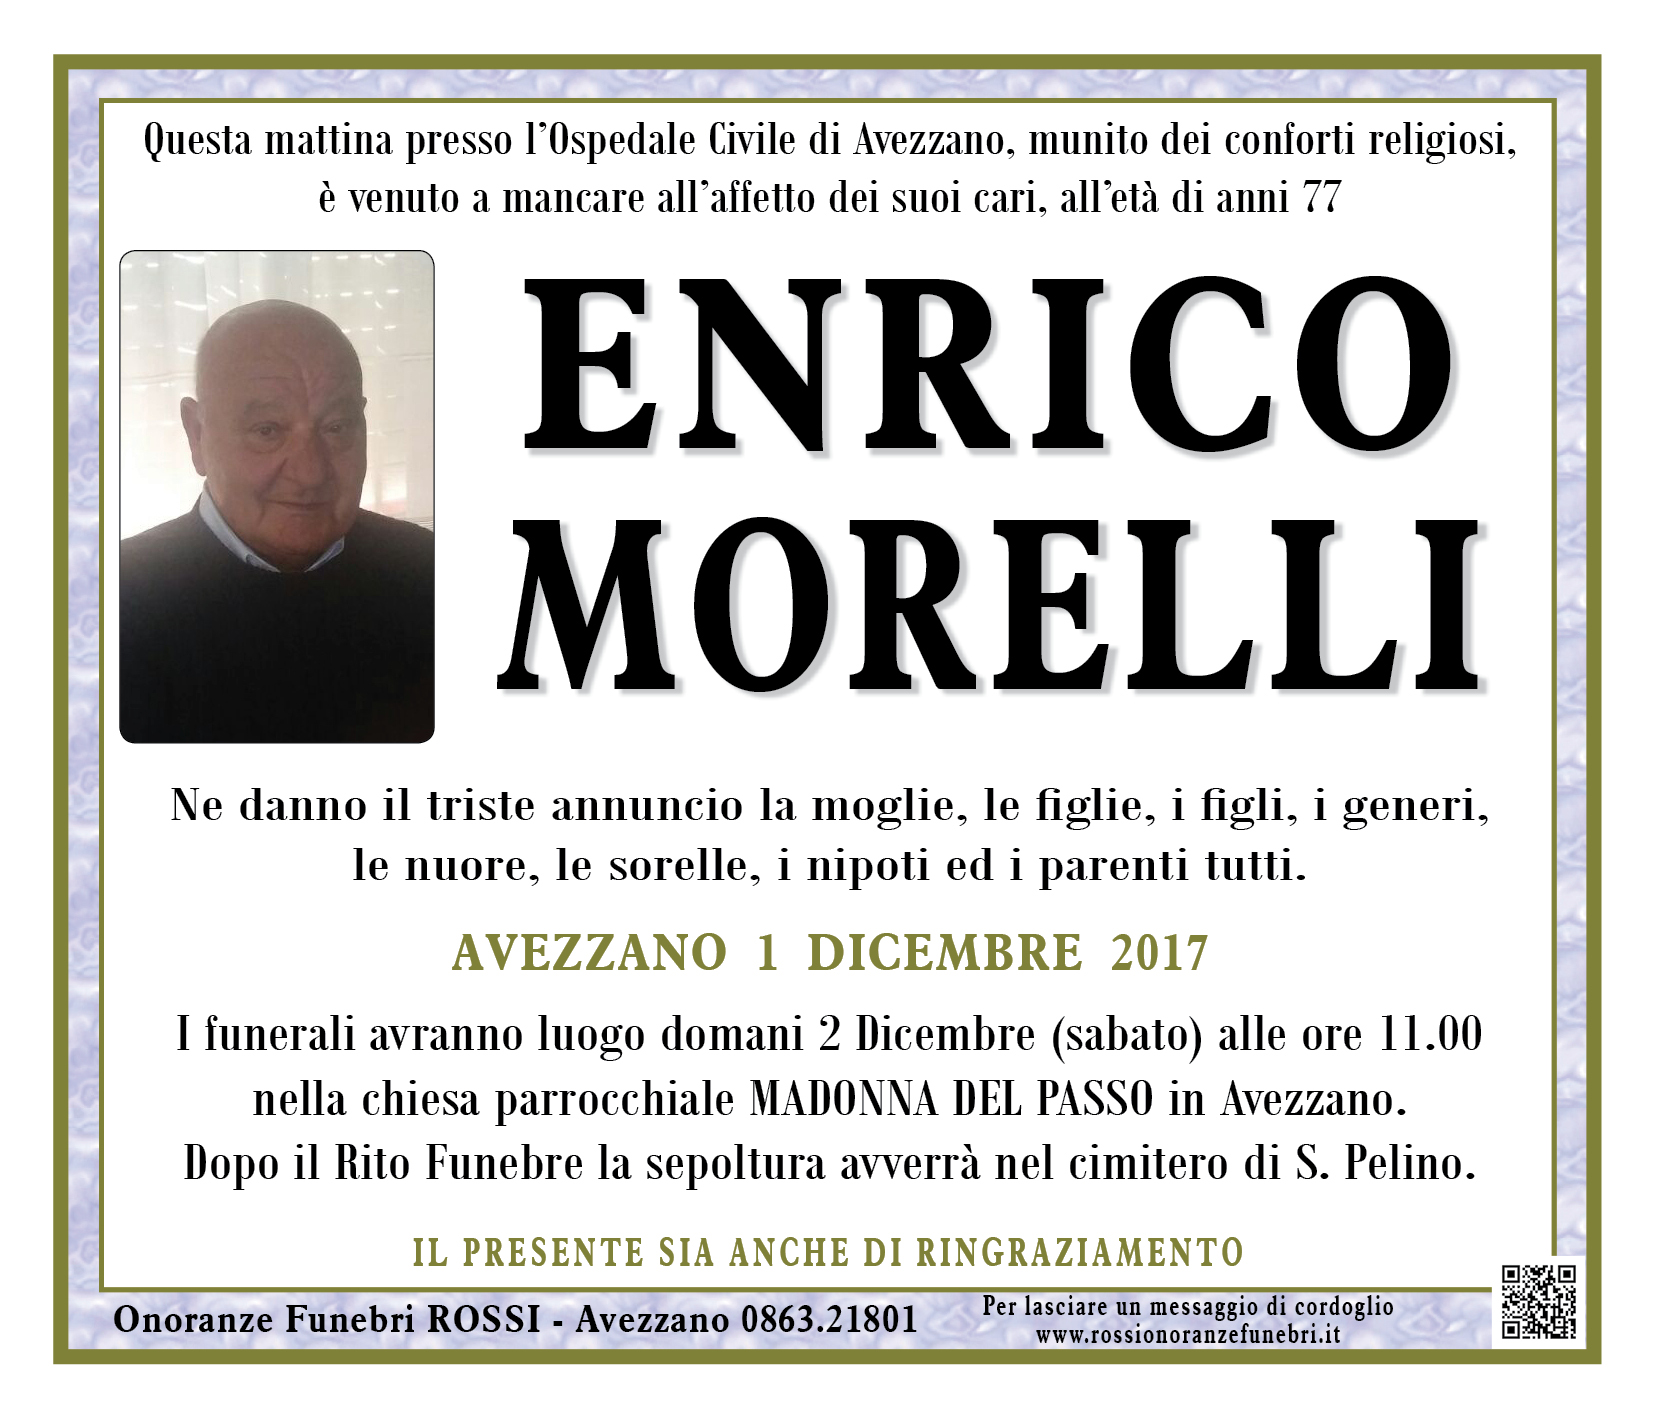 Enrico Morelli